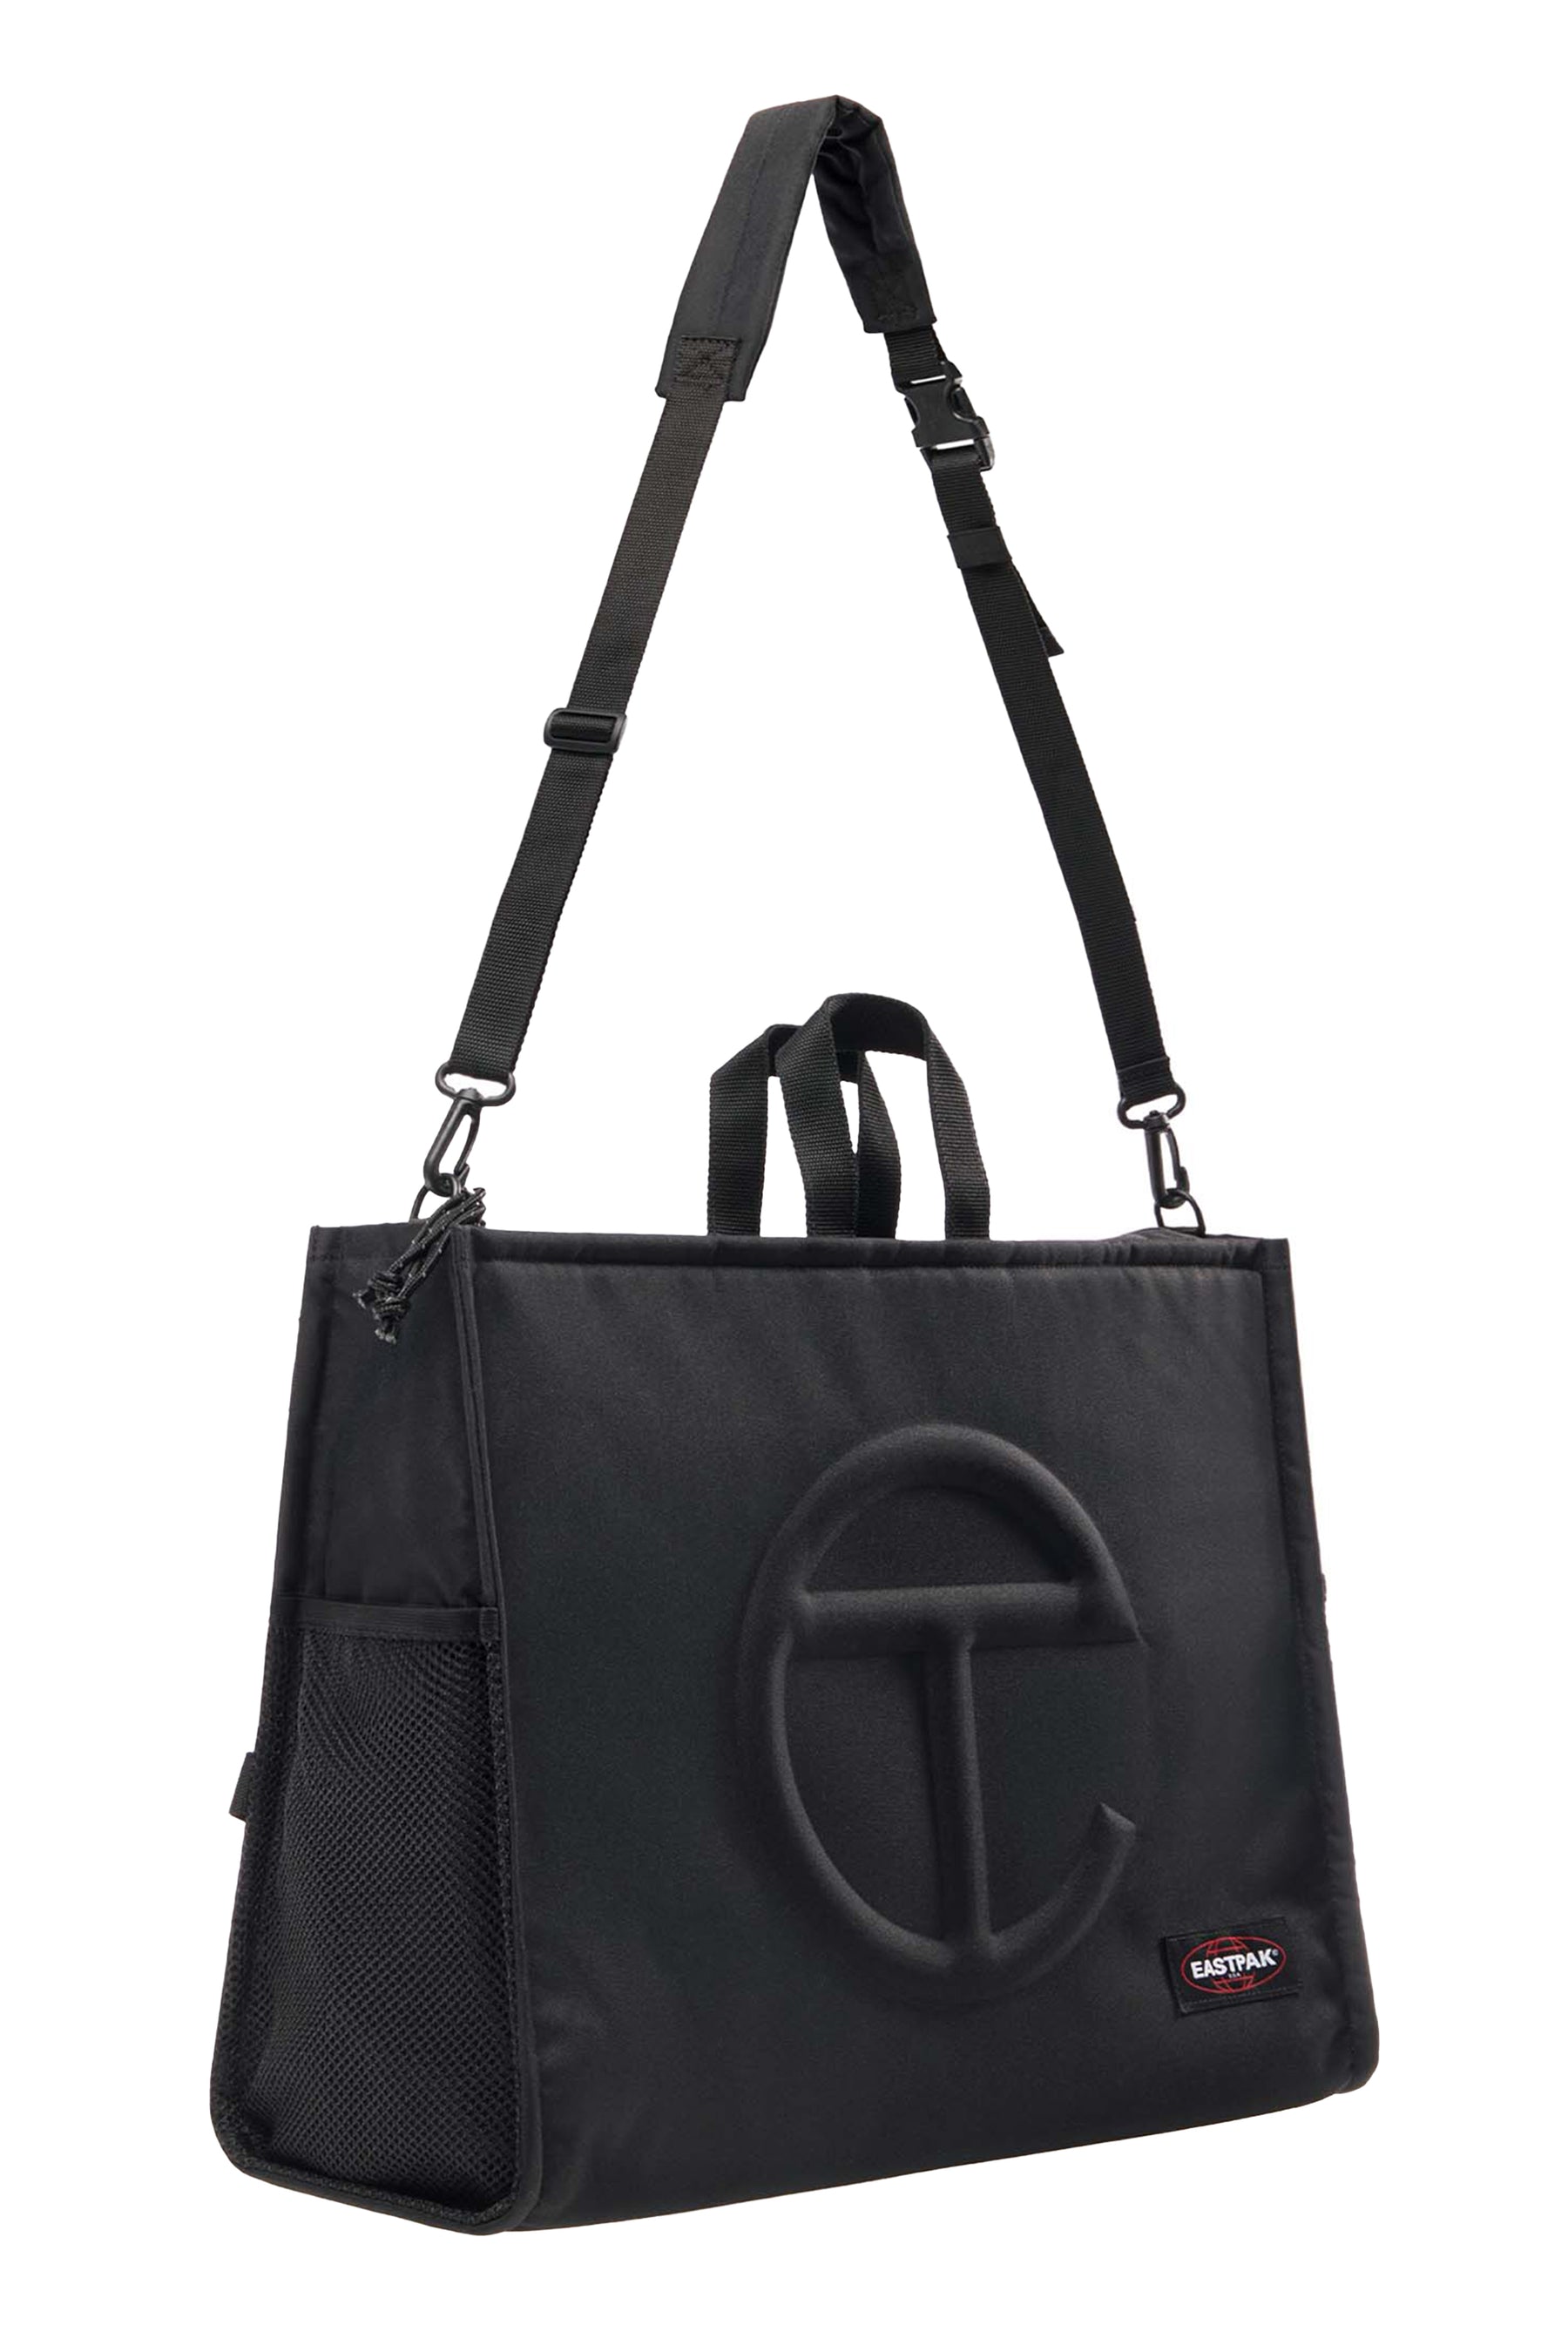 eastpak×Telfar shopping bag small black